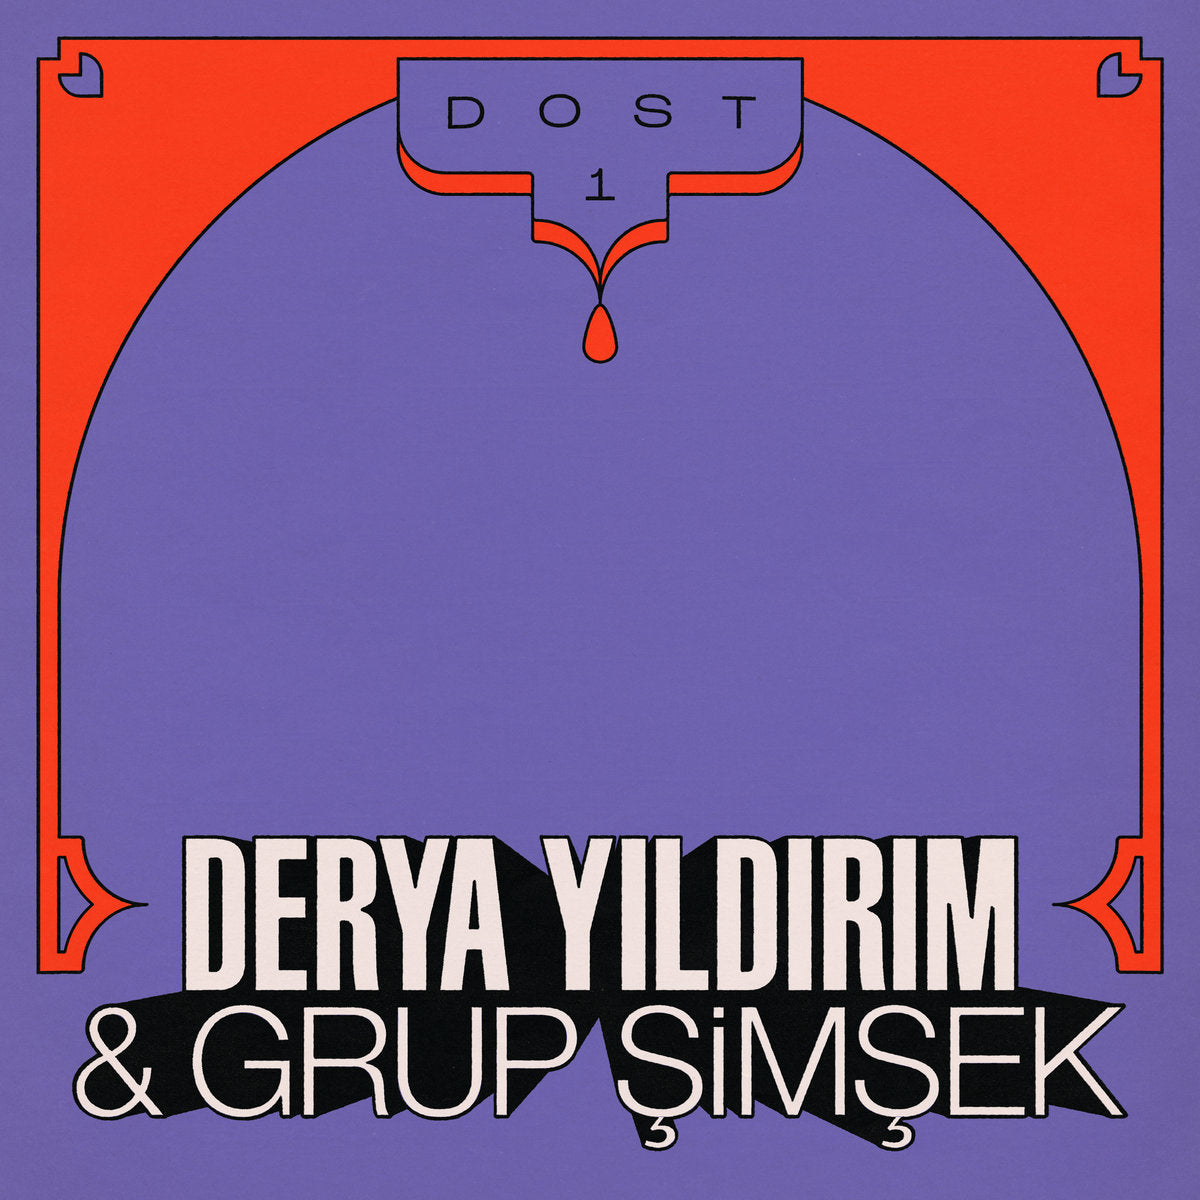 Derya Yıldırım & Grup Şimşek - Dost 1 - LP